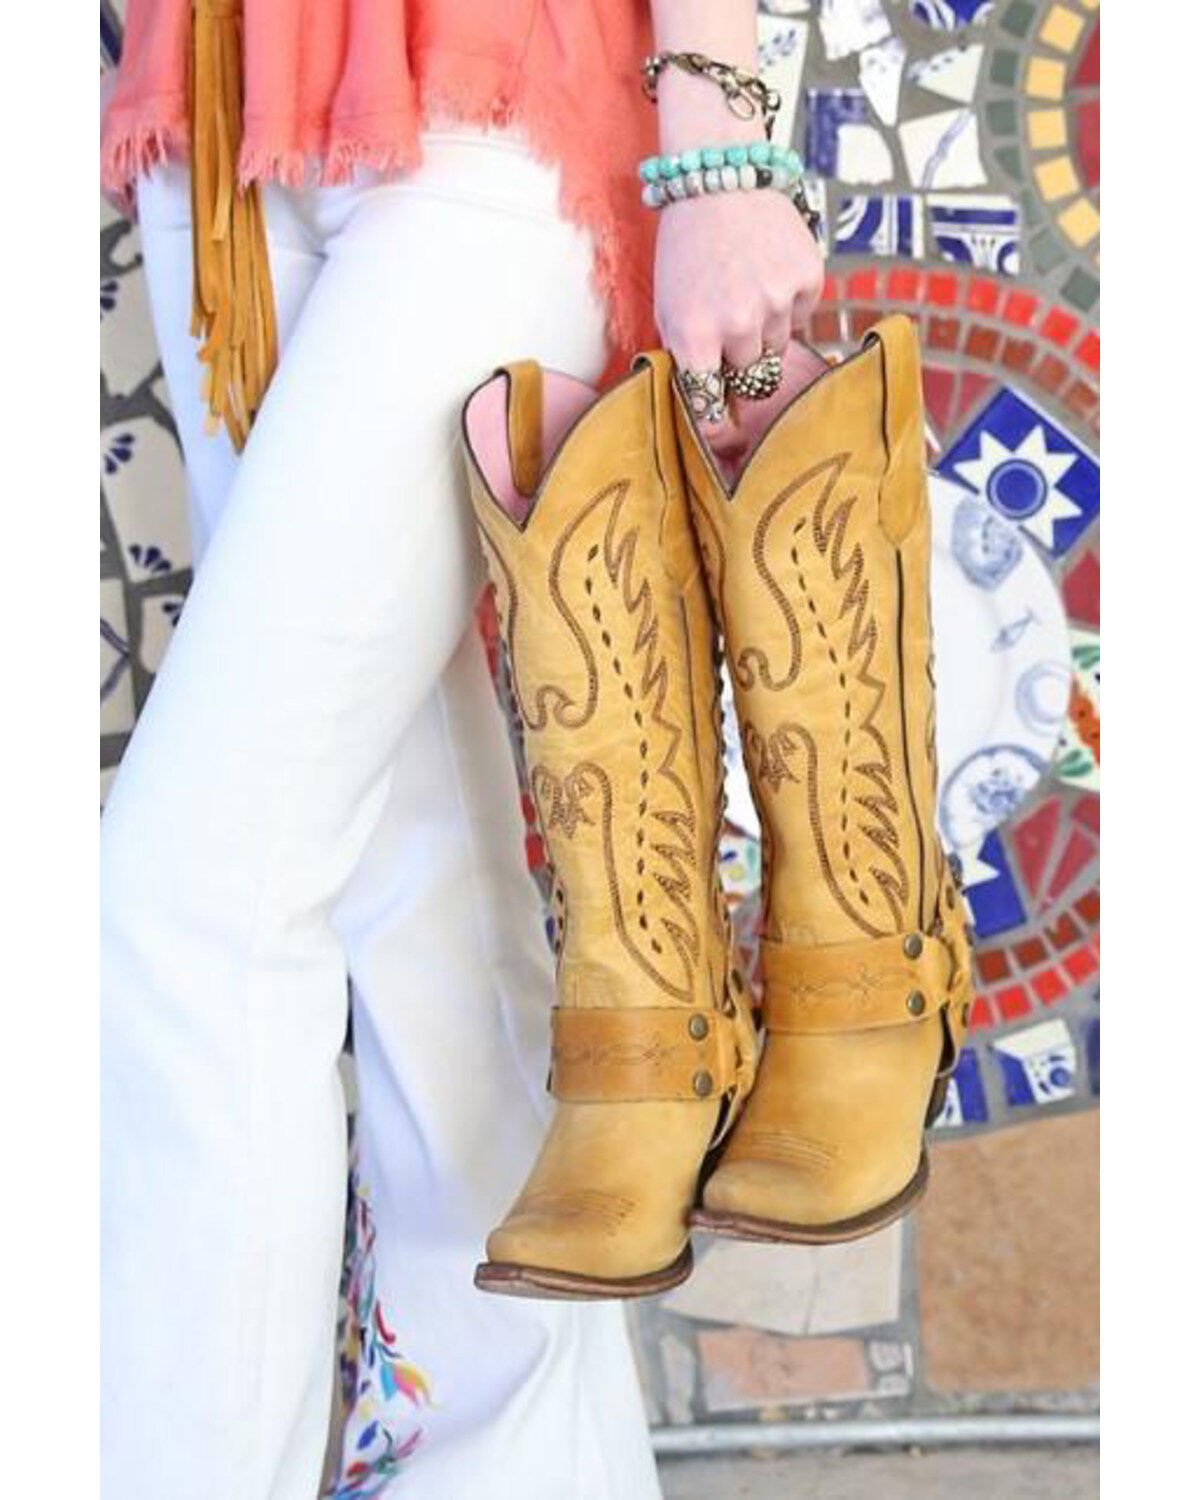 vagabond cowboy boots